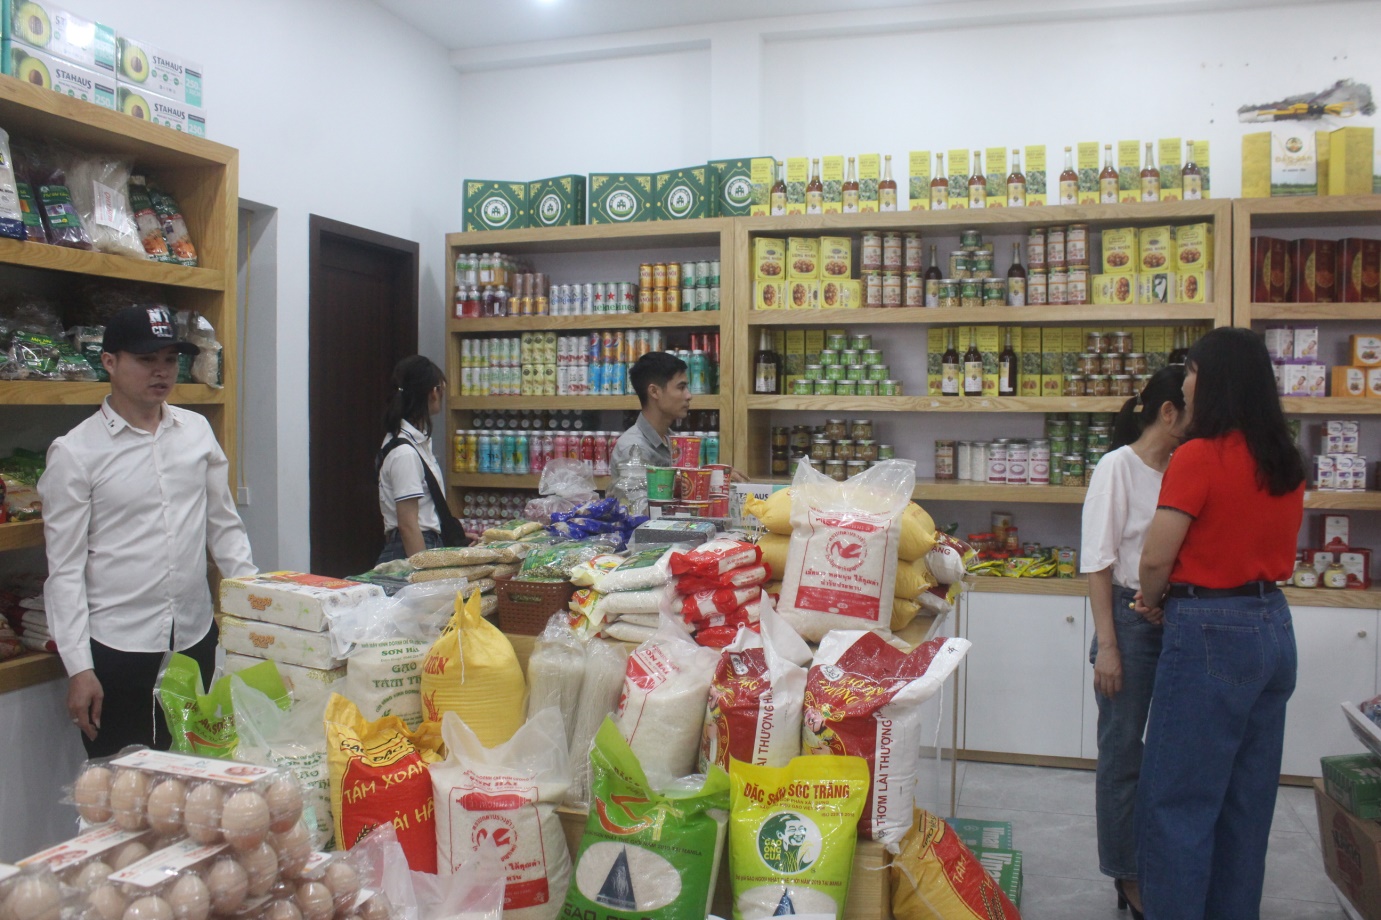 Khai trương điểm giới thiệu và bán sản phẩm rau củ quả, nông sản, thực phẩm chứng nhận Vietgap, hữu cơ, OCOP